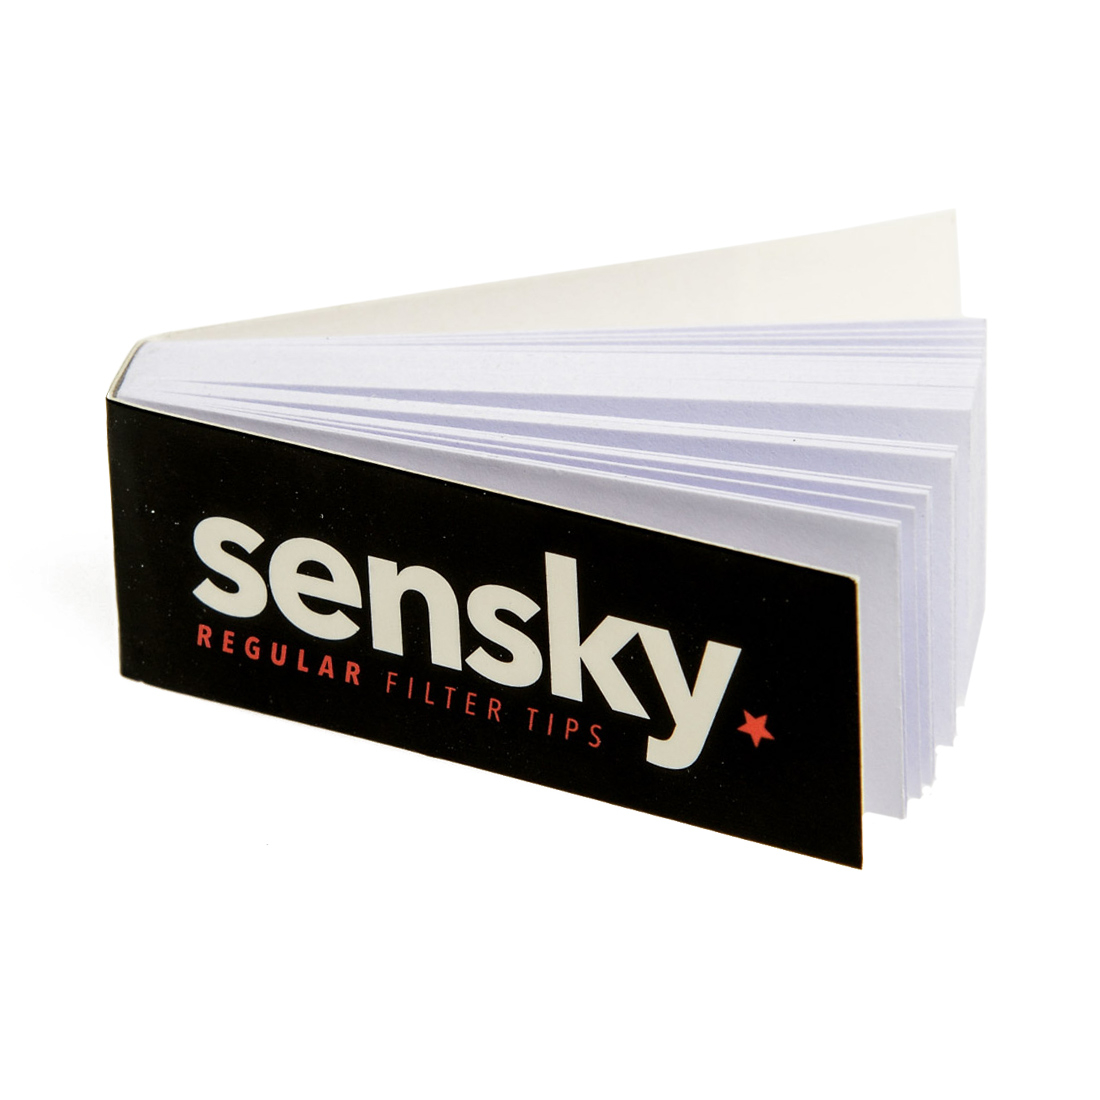 Tips Sensky - Filtre Carton, Filtres et Tips